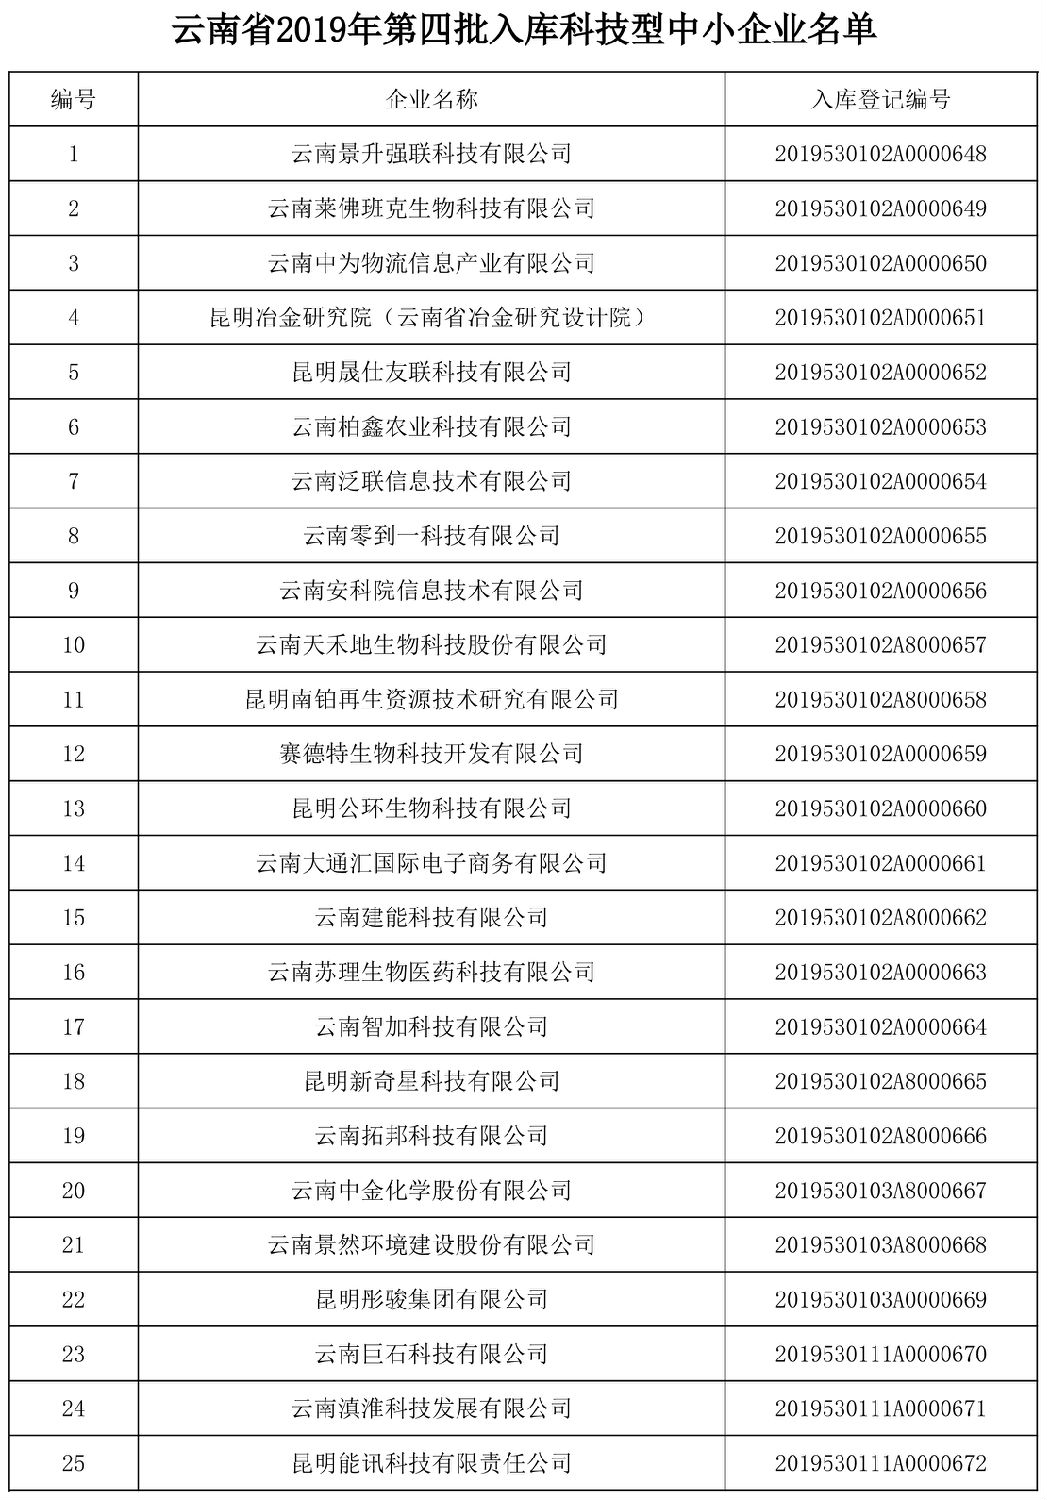 云南省科技厅关于2019年第四批入库国家科技型中小企业名单的公告-1.jpg